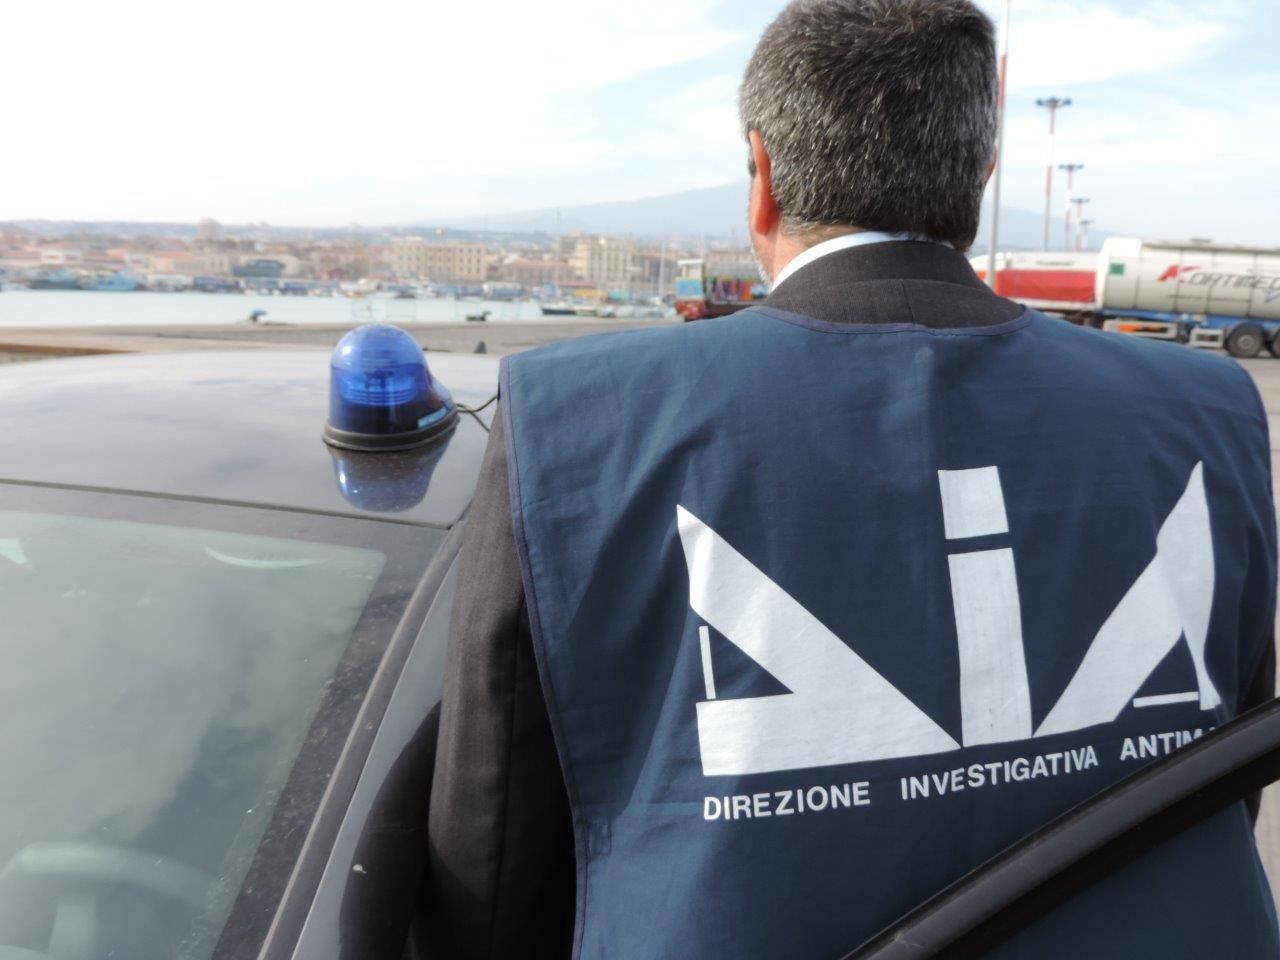 Mafia: in Sardegna infiltrazioni in appalti e droga. È quanto emerge nella relazione annuale della Direzione nazionale antimafia e antiterrorismo